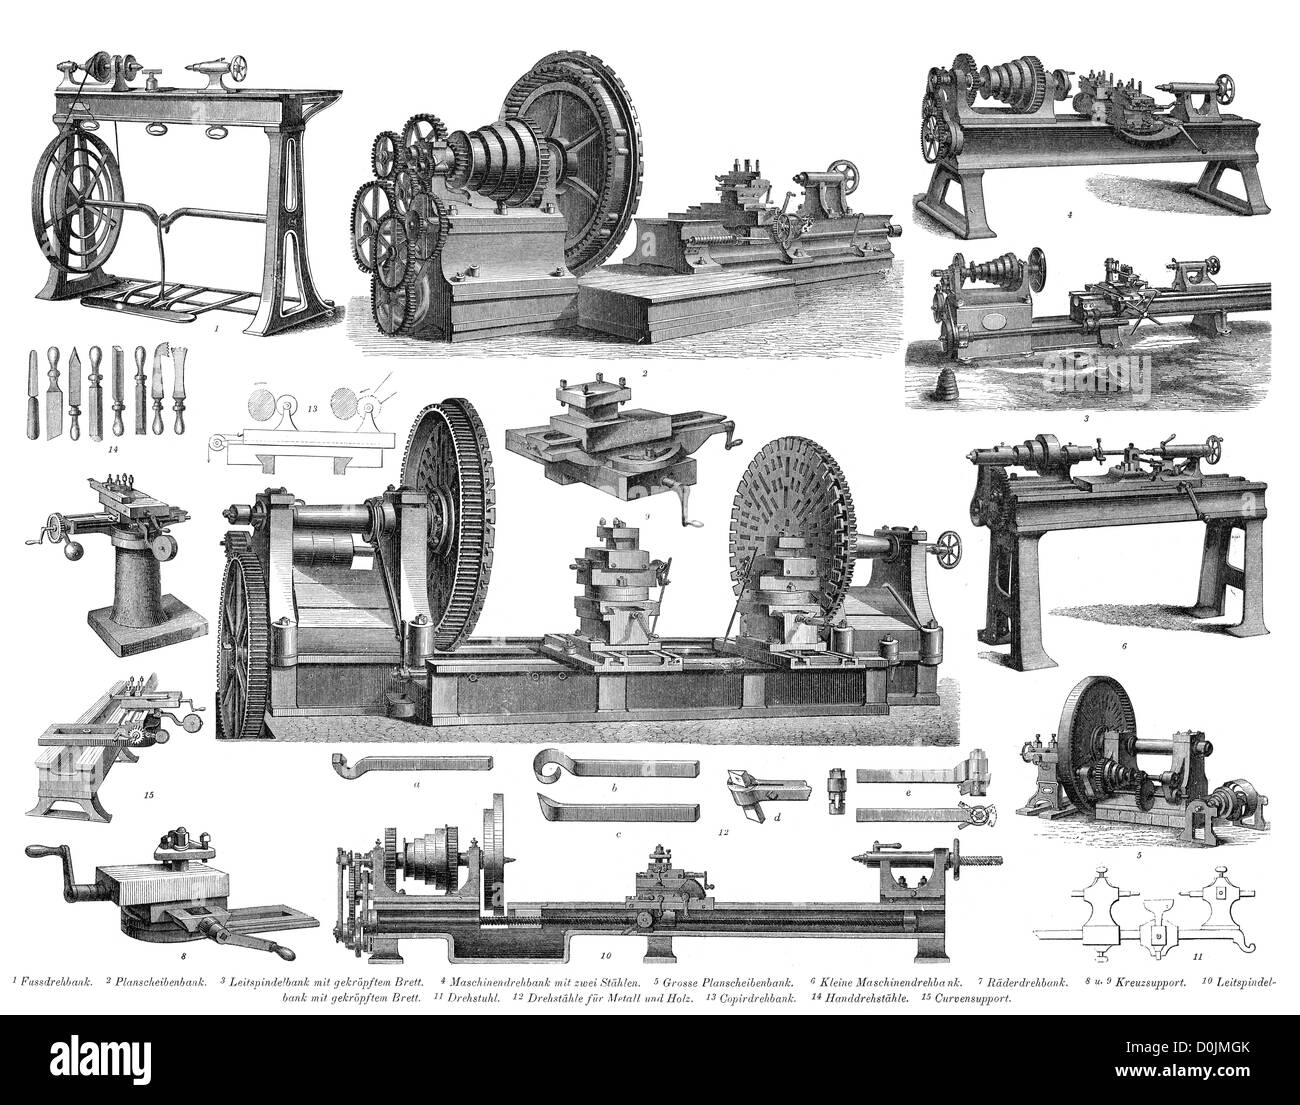 Industrielle revolution drehmaschine Schwarzweiß-Stockfotos und -bilder -  Alamy